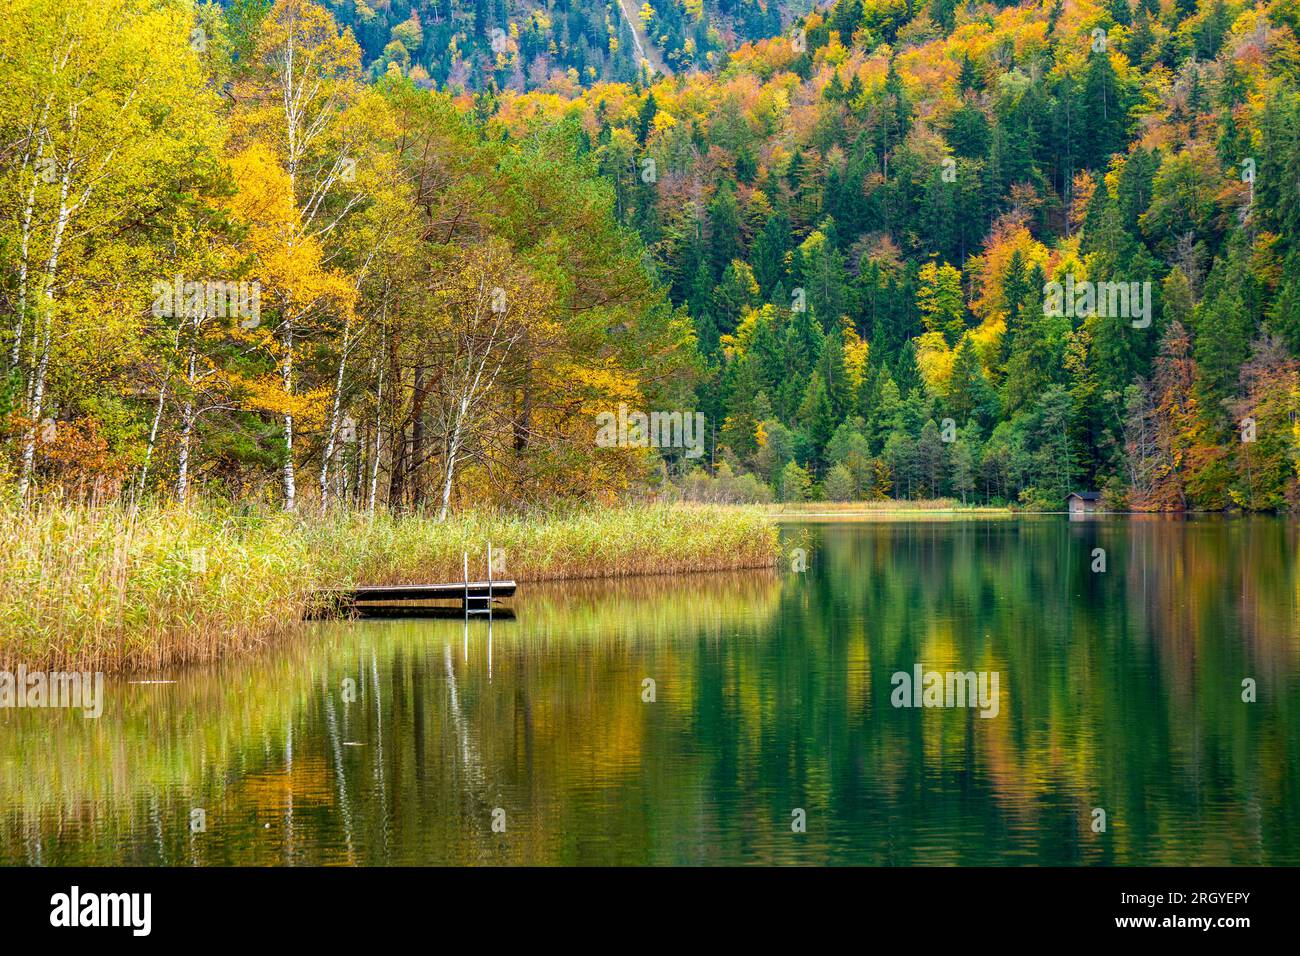 vista panoramica del paesaggio rurale con foglie colorate vivaci su alberi con riflessi nel lago Foto Stock